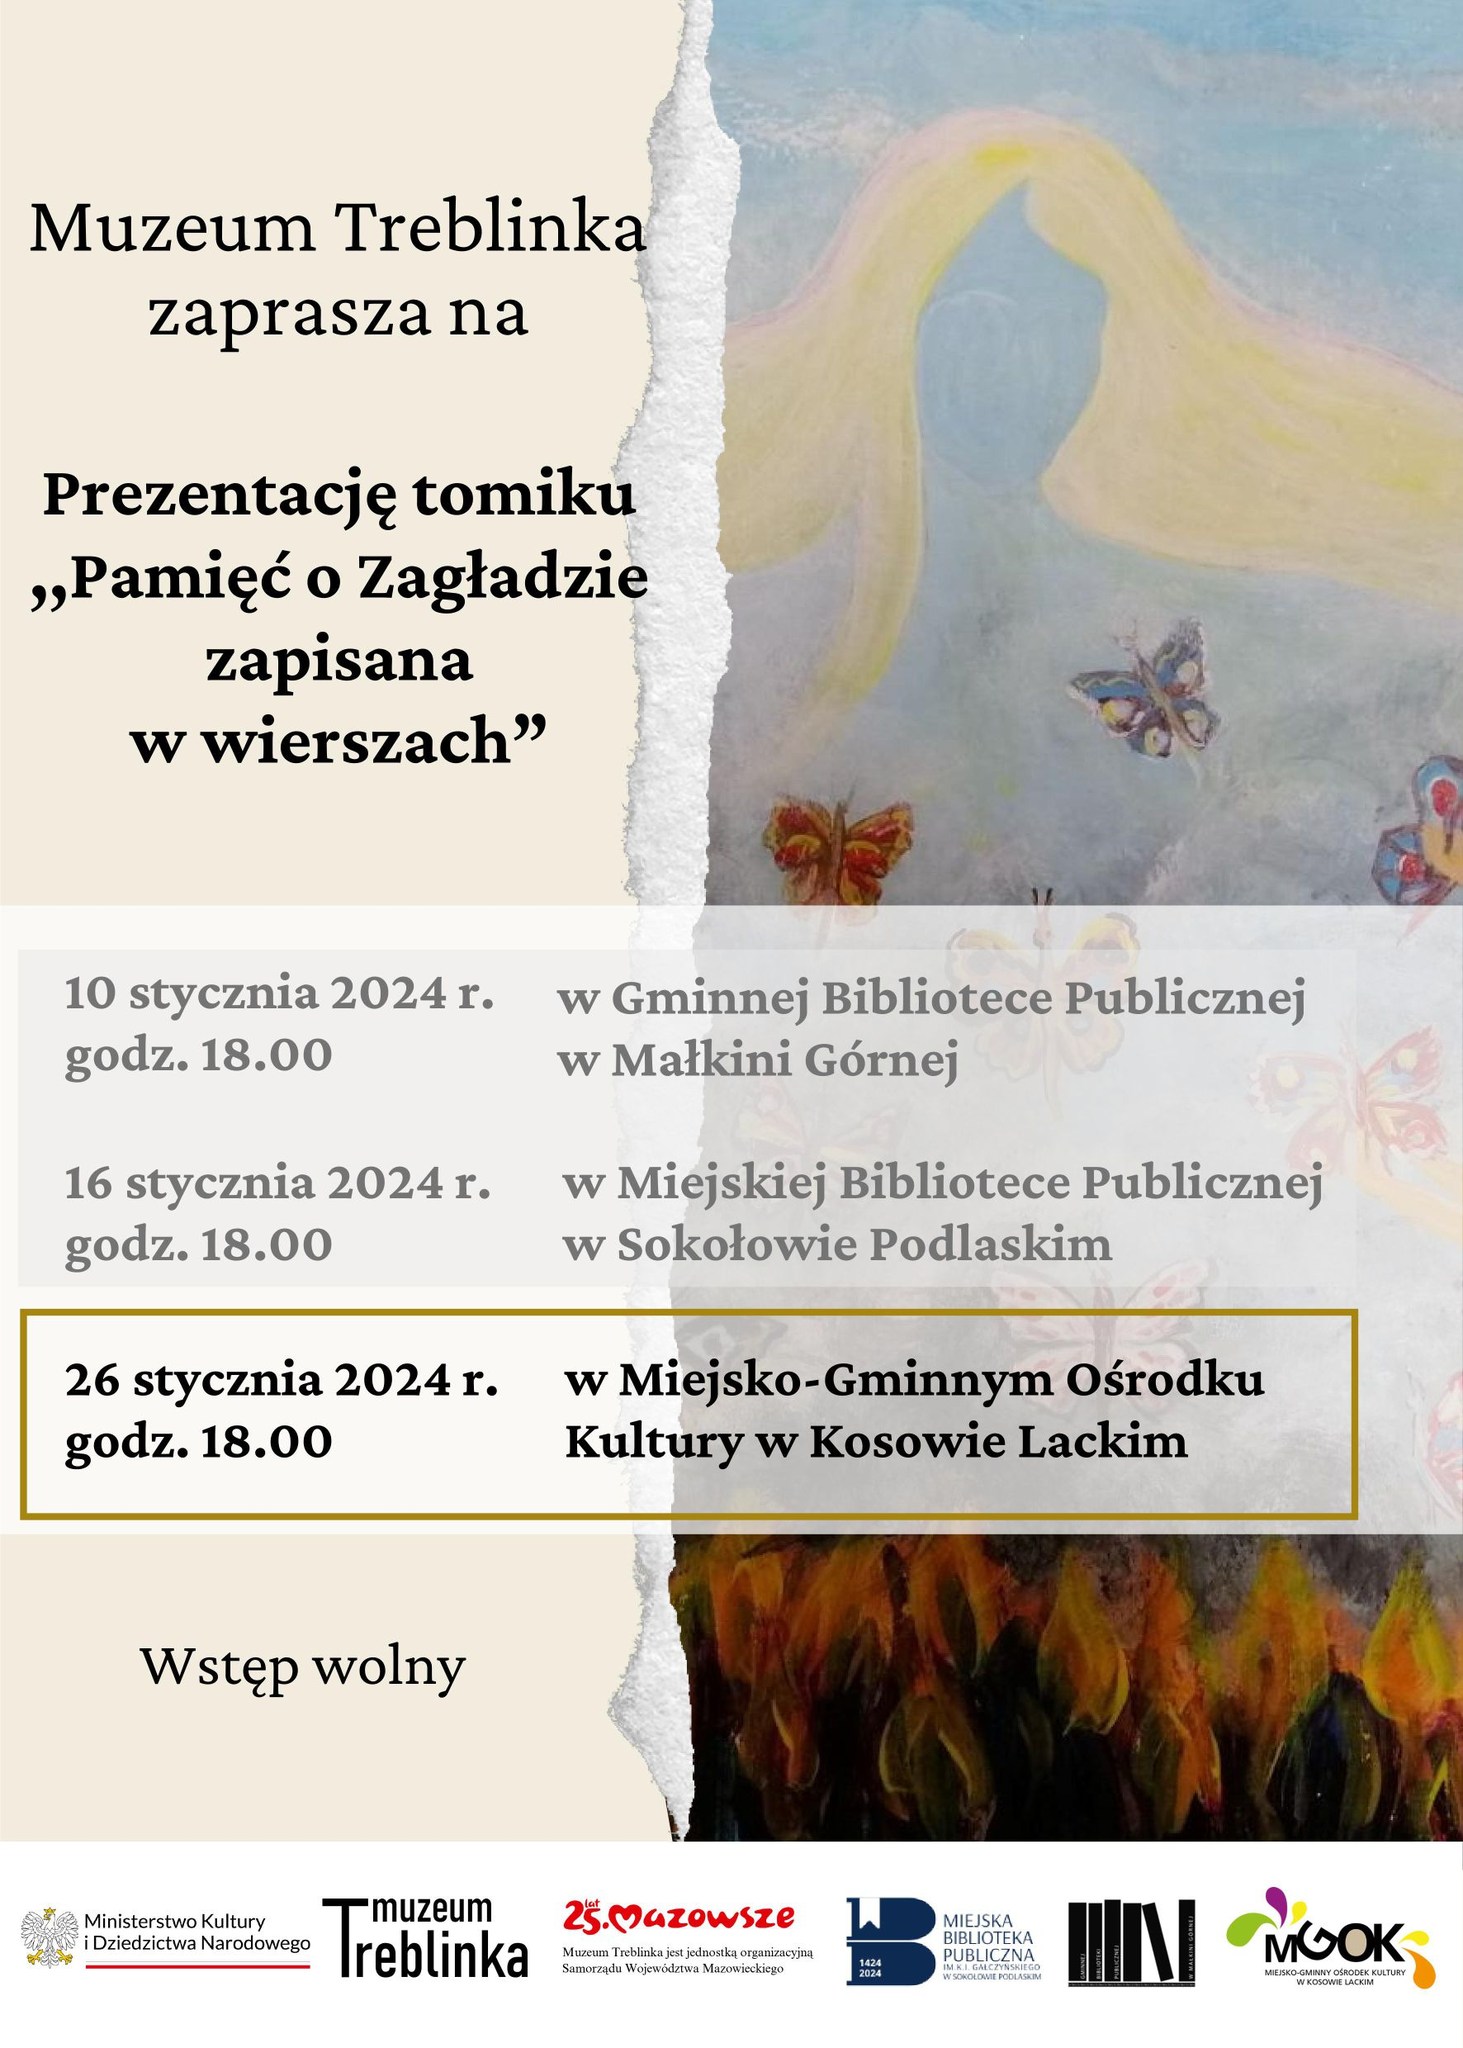 Spotkanie promujące tomik poezji pt. "Pamięć o zagładzie zapisana w wierszach" - plakat